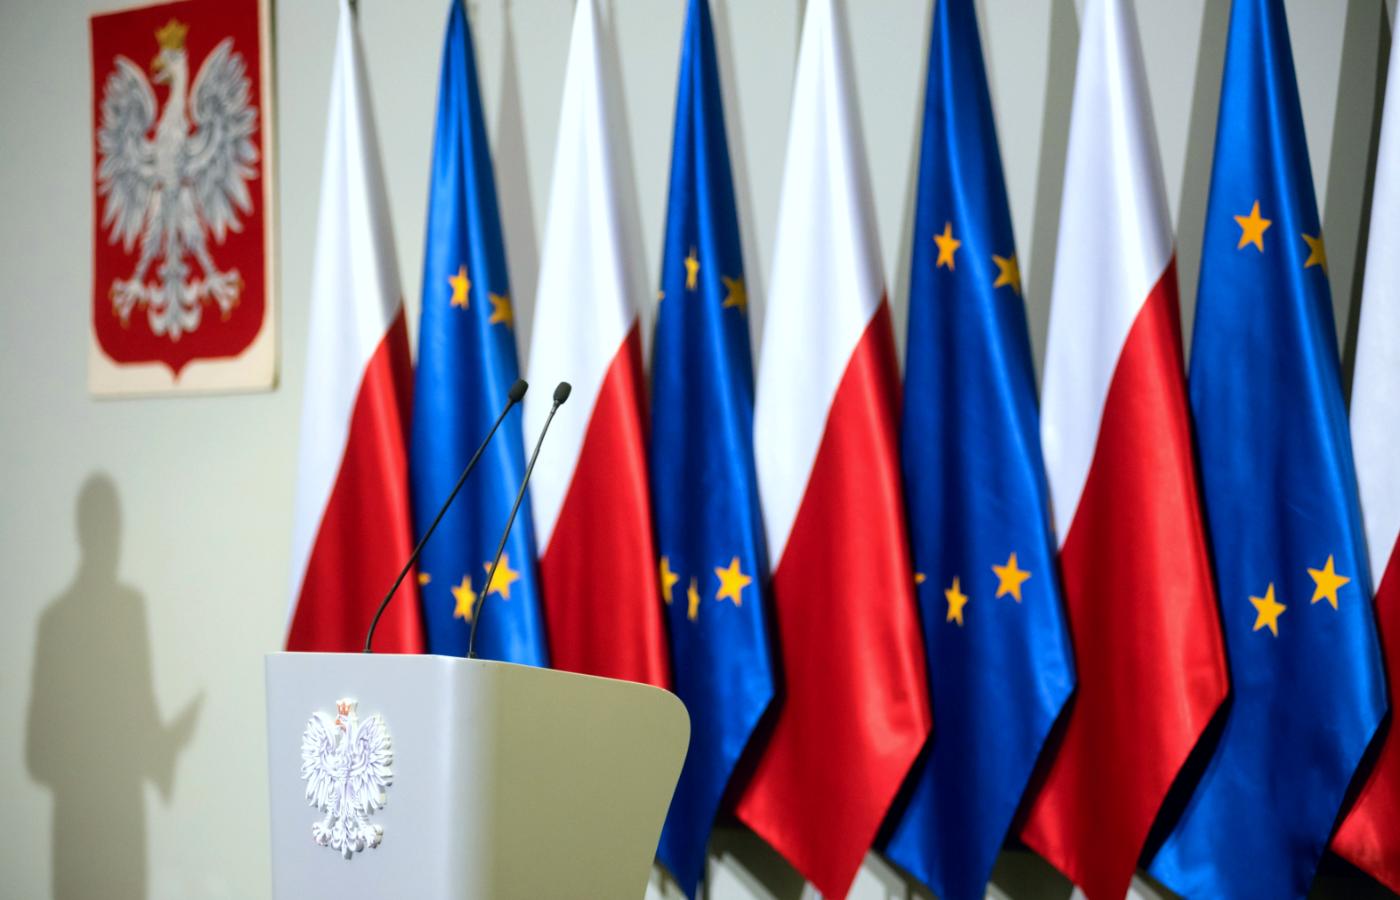 Jak już wiemy, w Polsce ma zapanować prawdziwa demokracja, prawdziwa praworządność i prawdziwa równość.